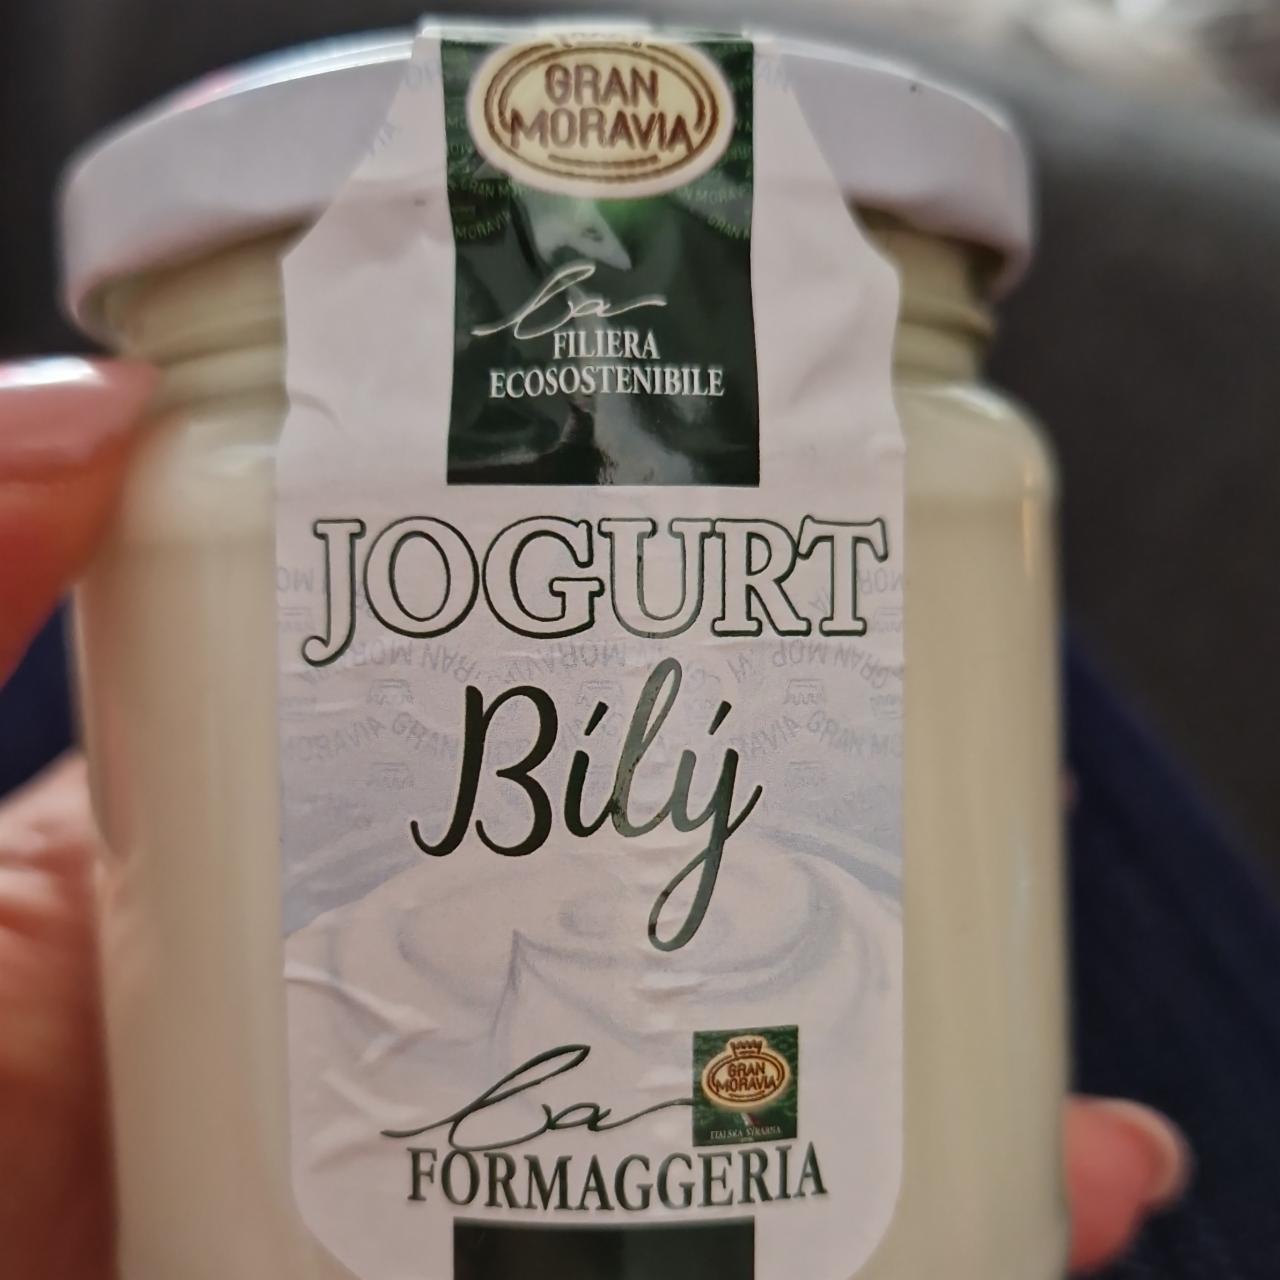 Fotografie - Jogurt Bílý Gran Moravia